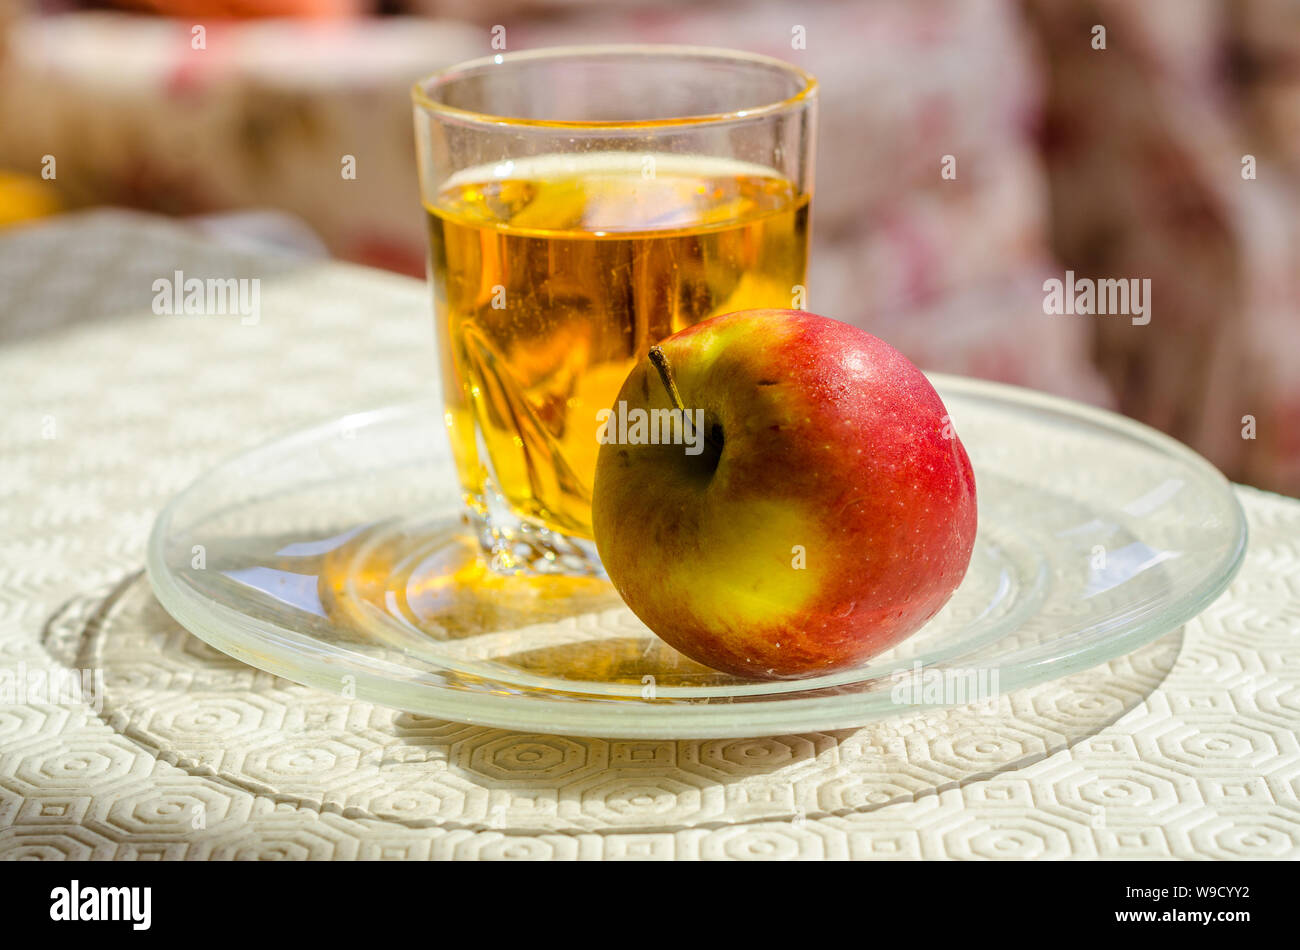 Une pomme et un verre de jus de pomme ensemble sur une table. Banque D'Images